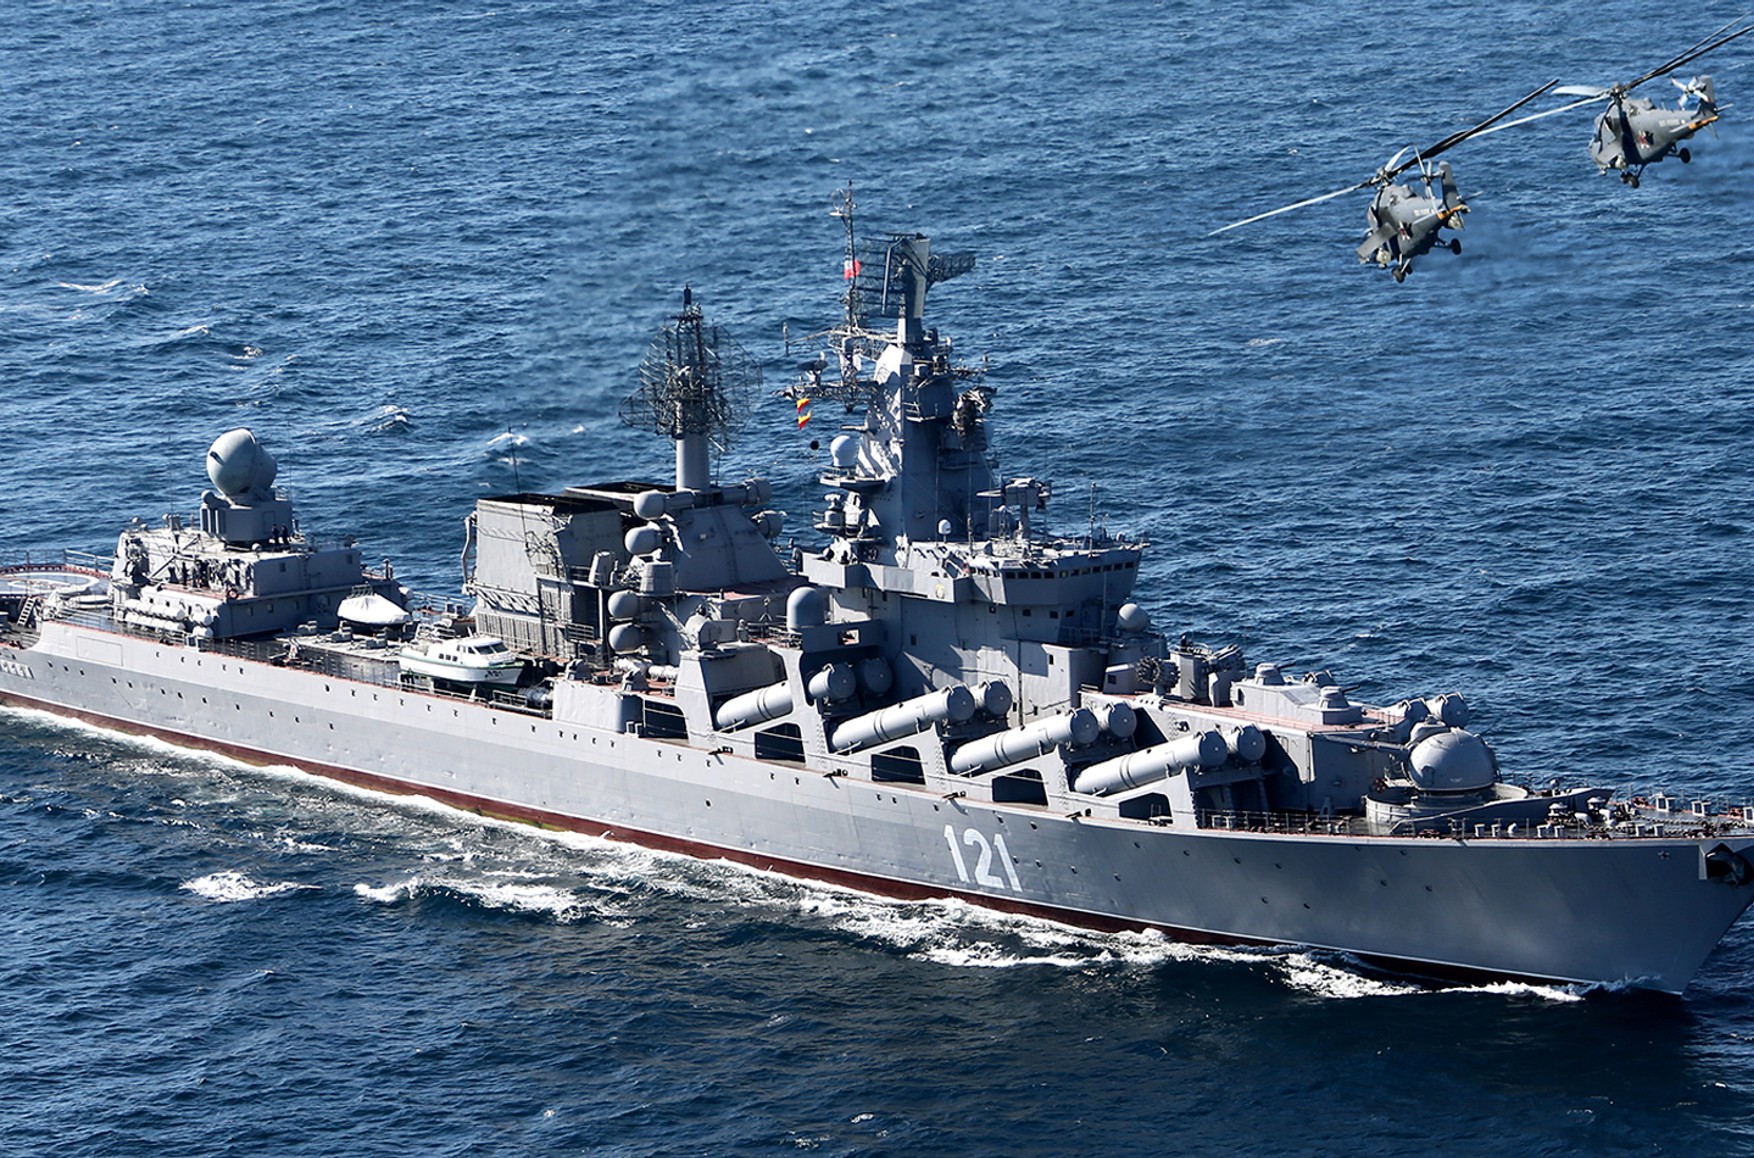 Пресс-секретарь Пентагона: крейсер «Москва» находится на плаву и «самостоятельно движется через Черное море»